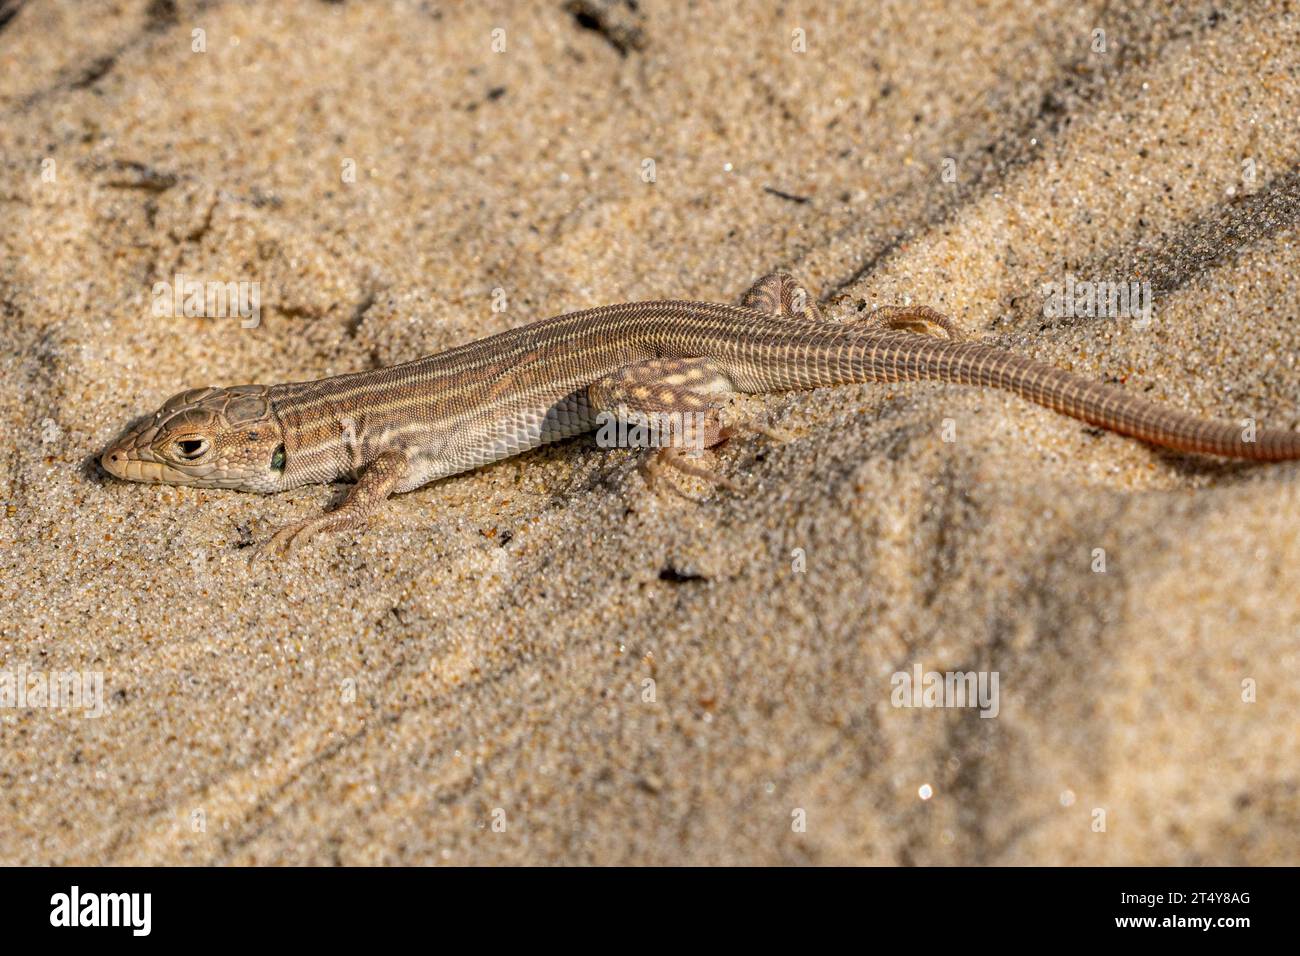 Schreiber's fringe-fingered lizard Stock Photo